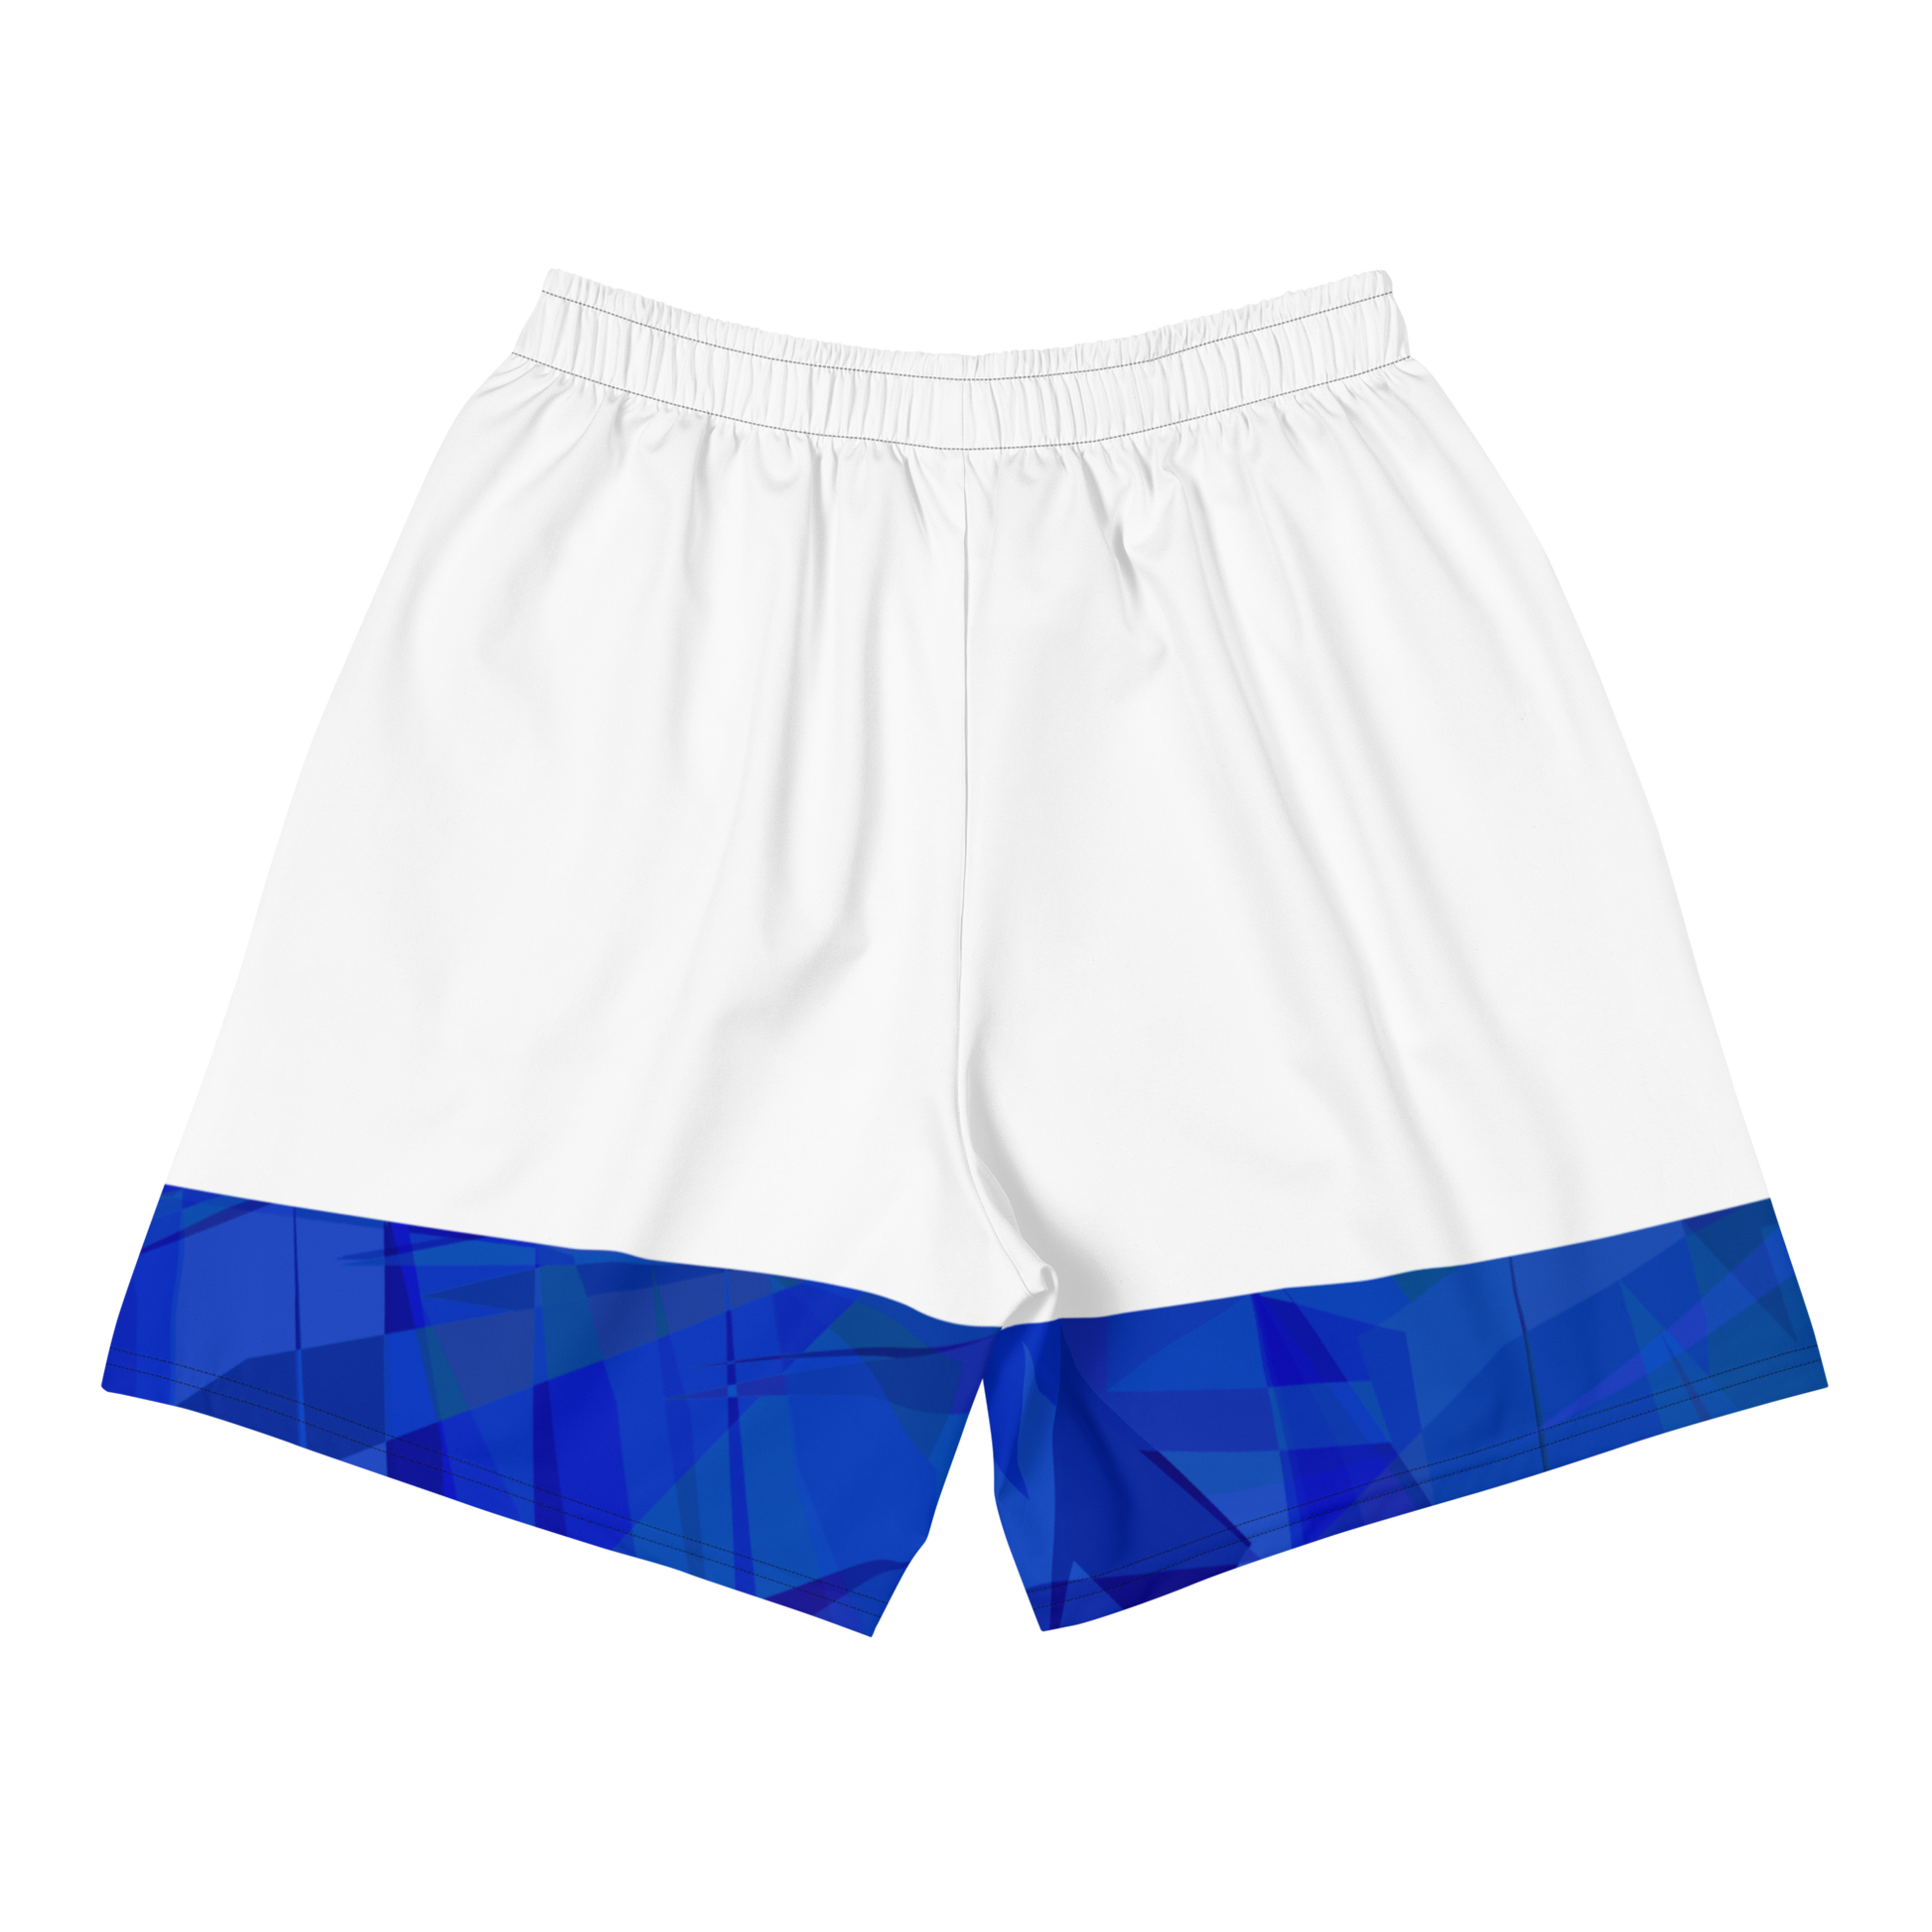 Sqdltd Starburst BLUW Men's Athletic Shorts